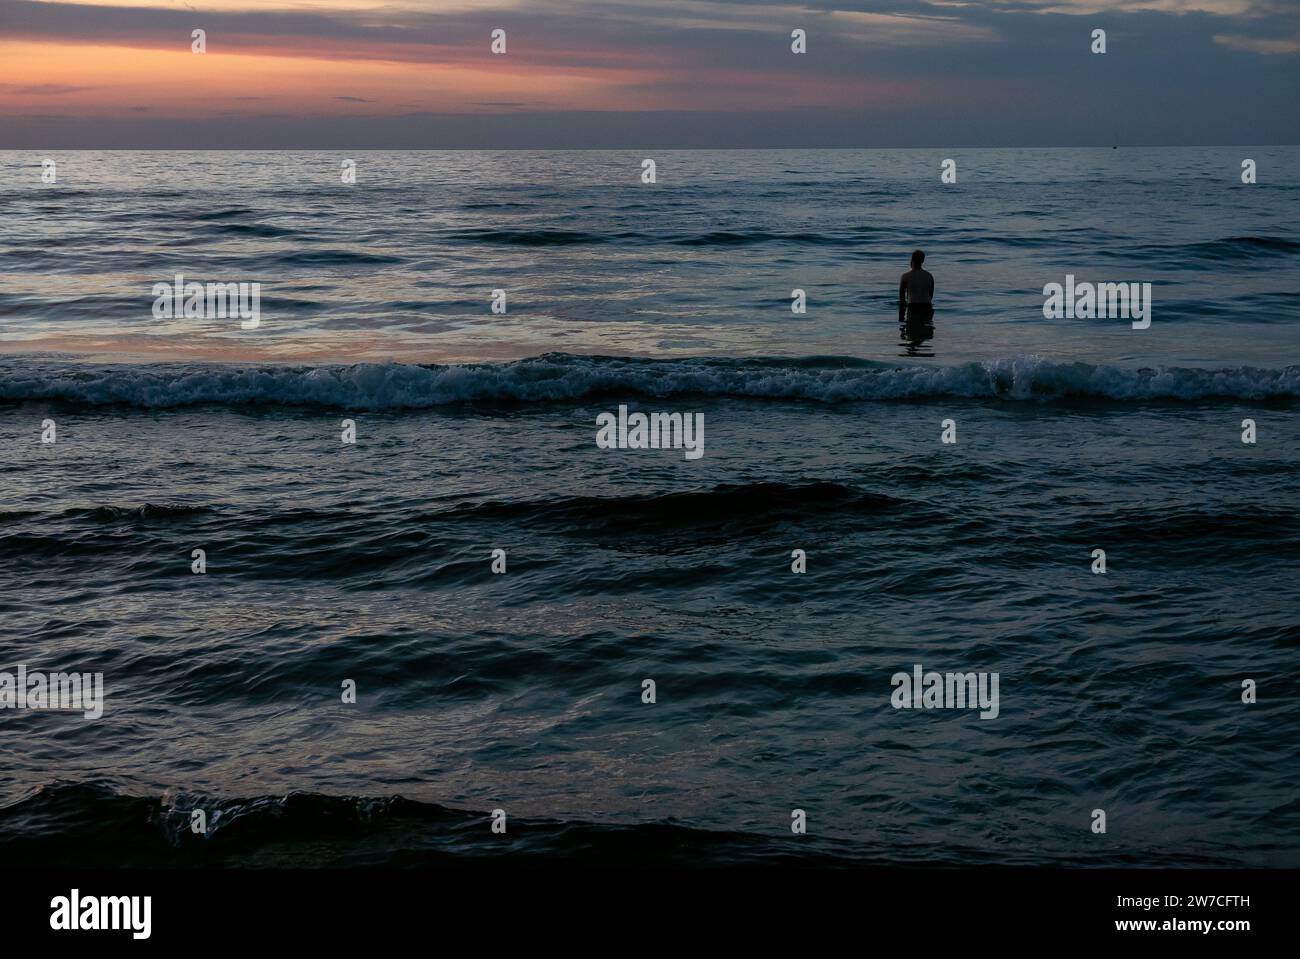 08.09.2018, Pologne, Kolobrzeg, Poméranie occidentale - Sillhouette d'un vacancier debout dans l'eau sur la côte Baltique au coucher du soleil. 00A180908D0993CAROE Banque D'Images